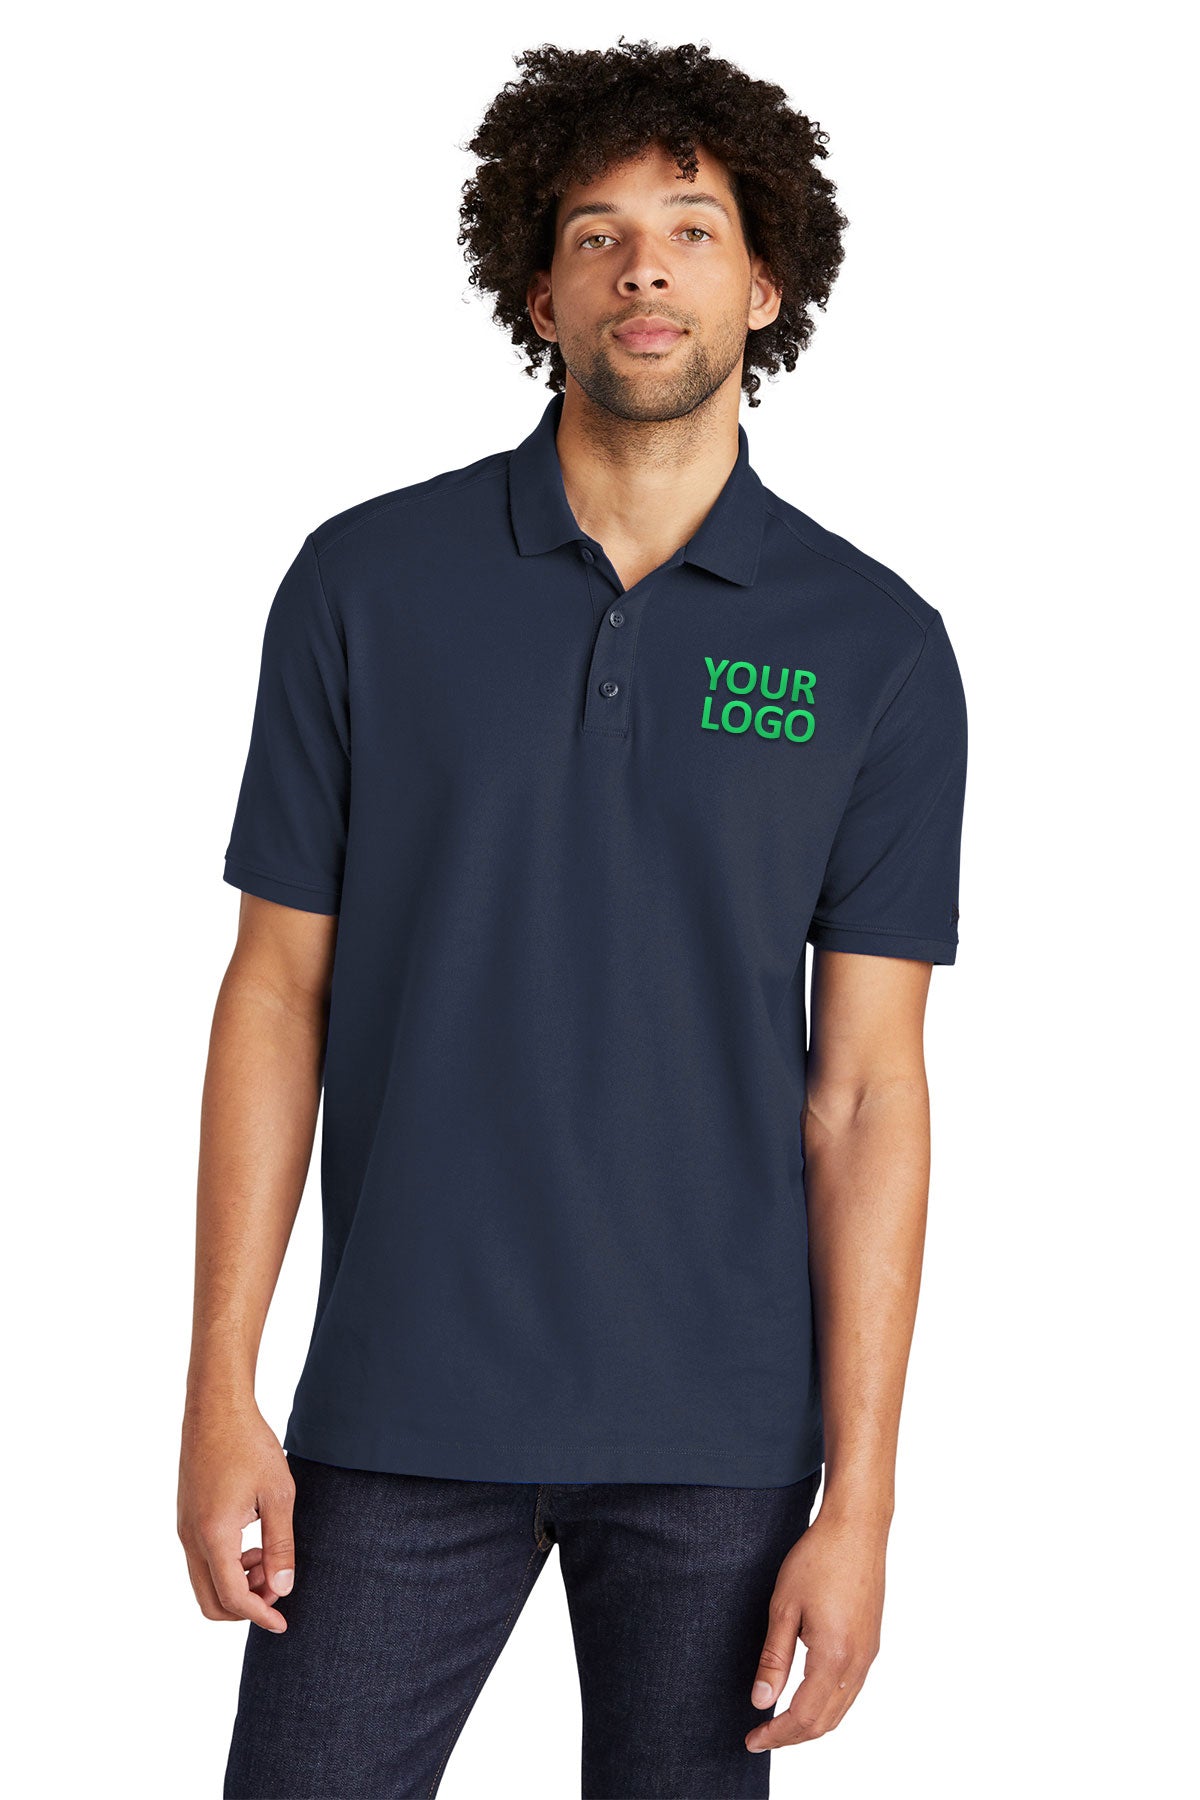 new era true navy nea300 polo shirts with logos